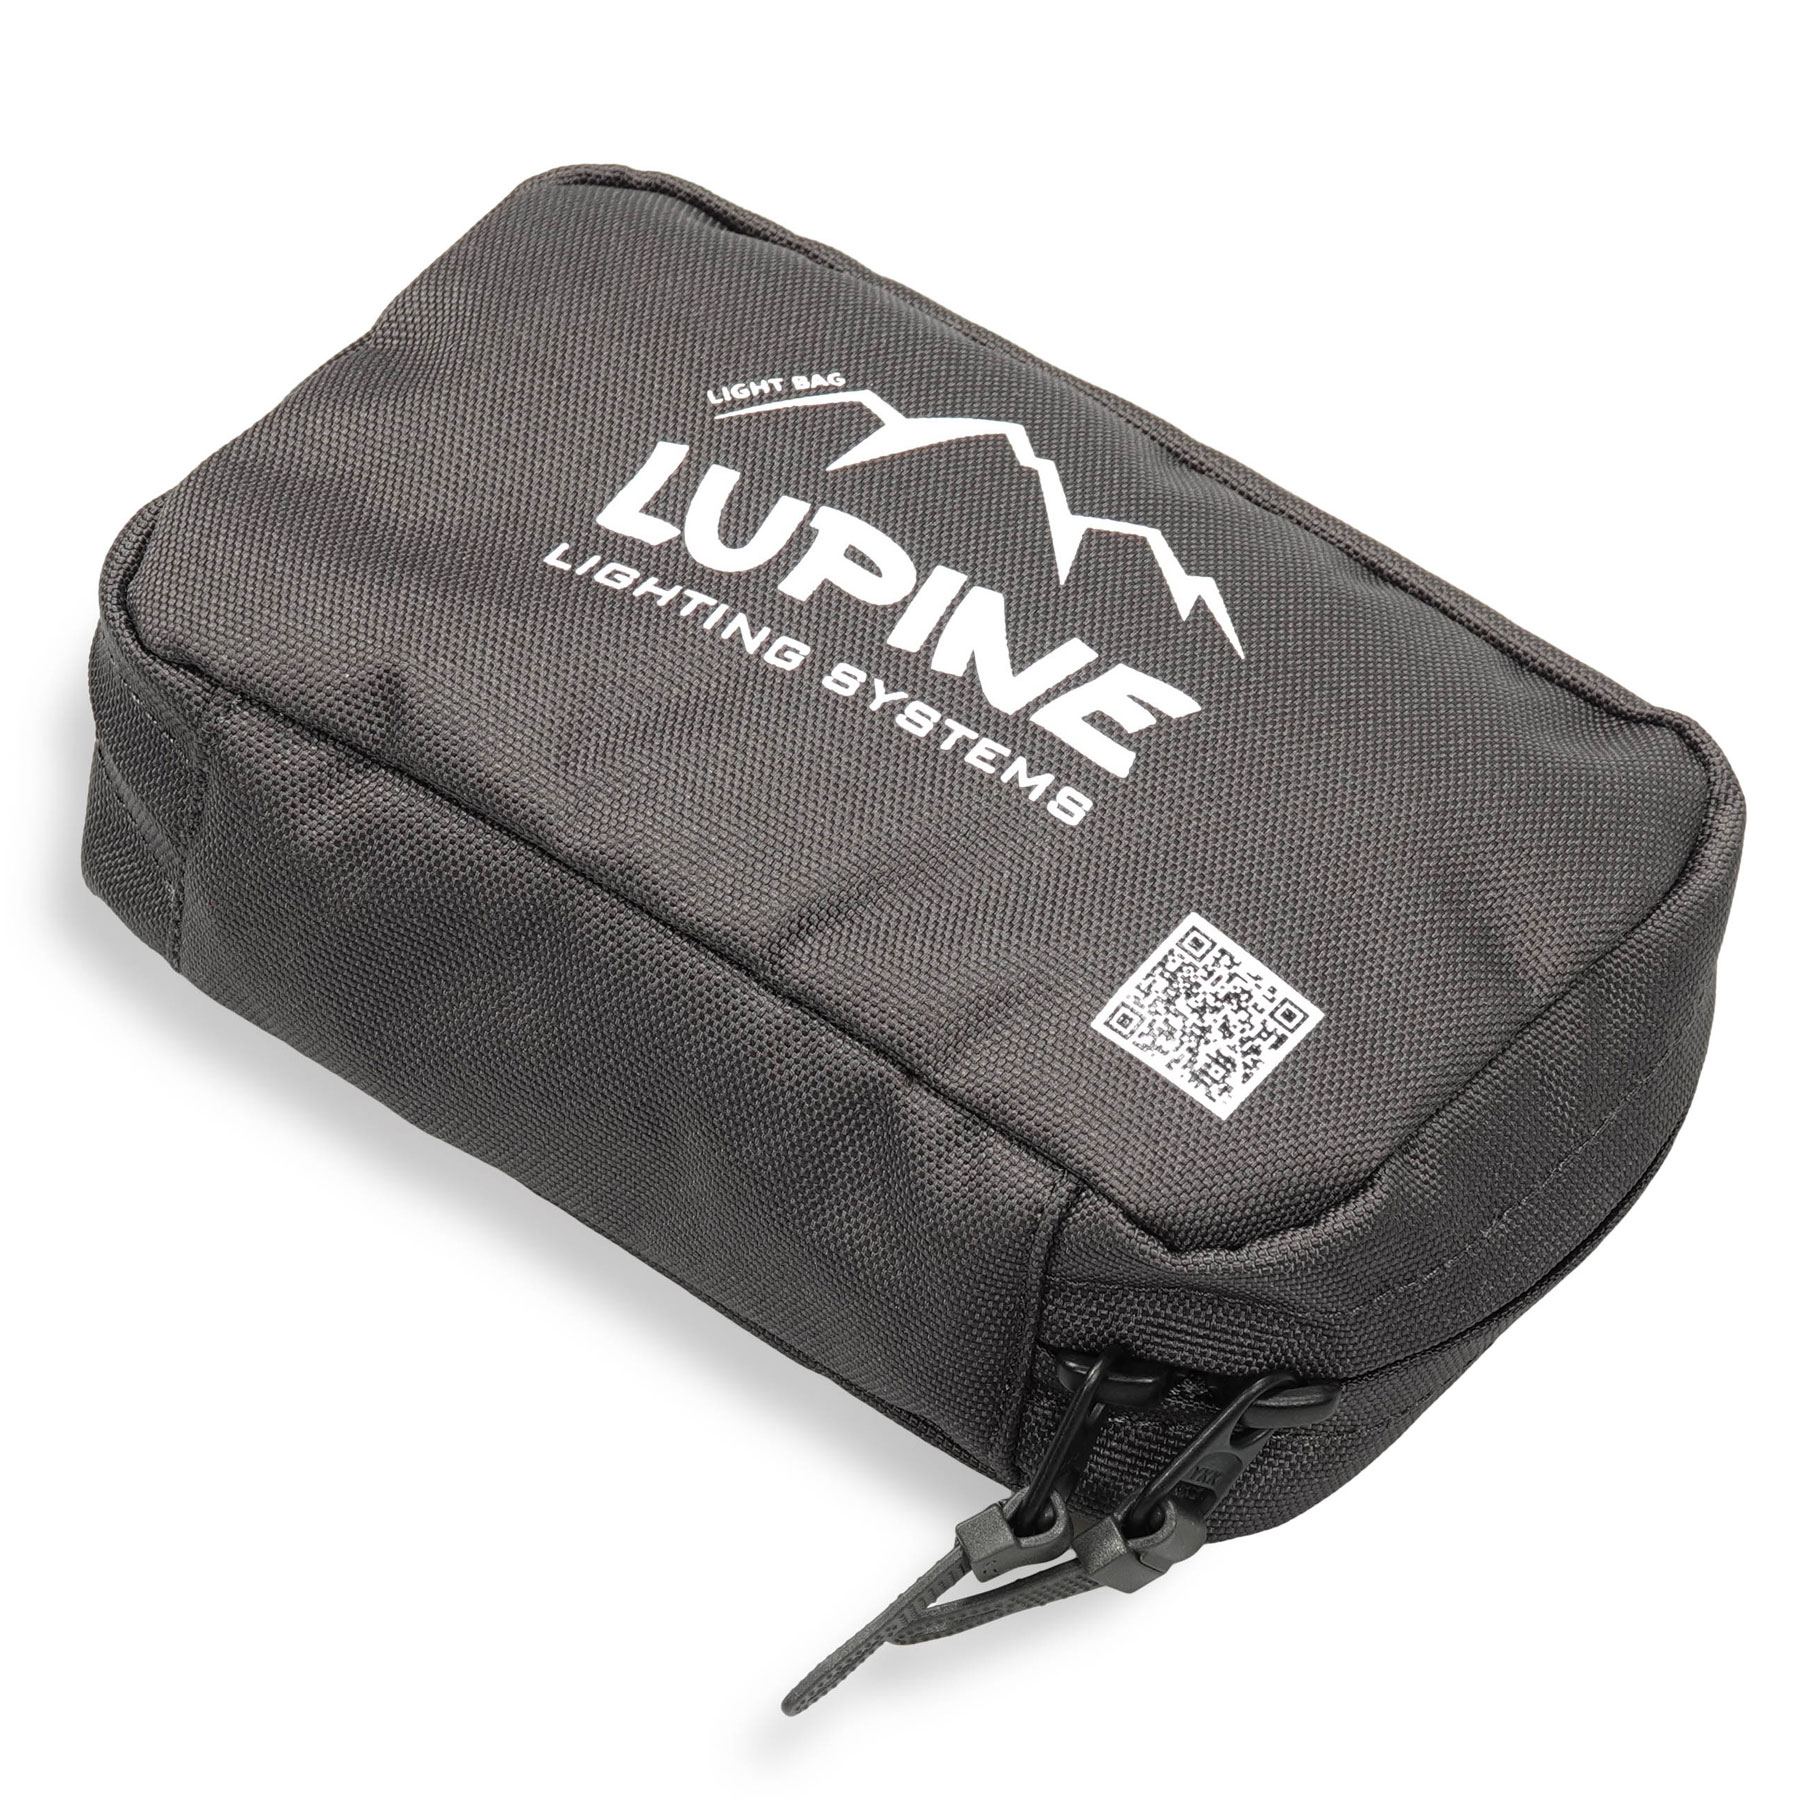 Productfoto van Lupine Light Bag - dark grey